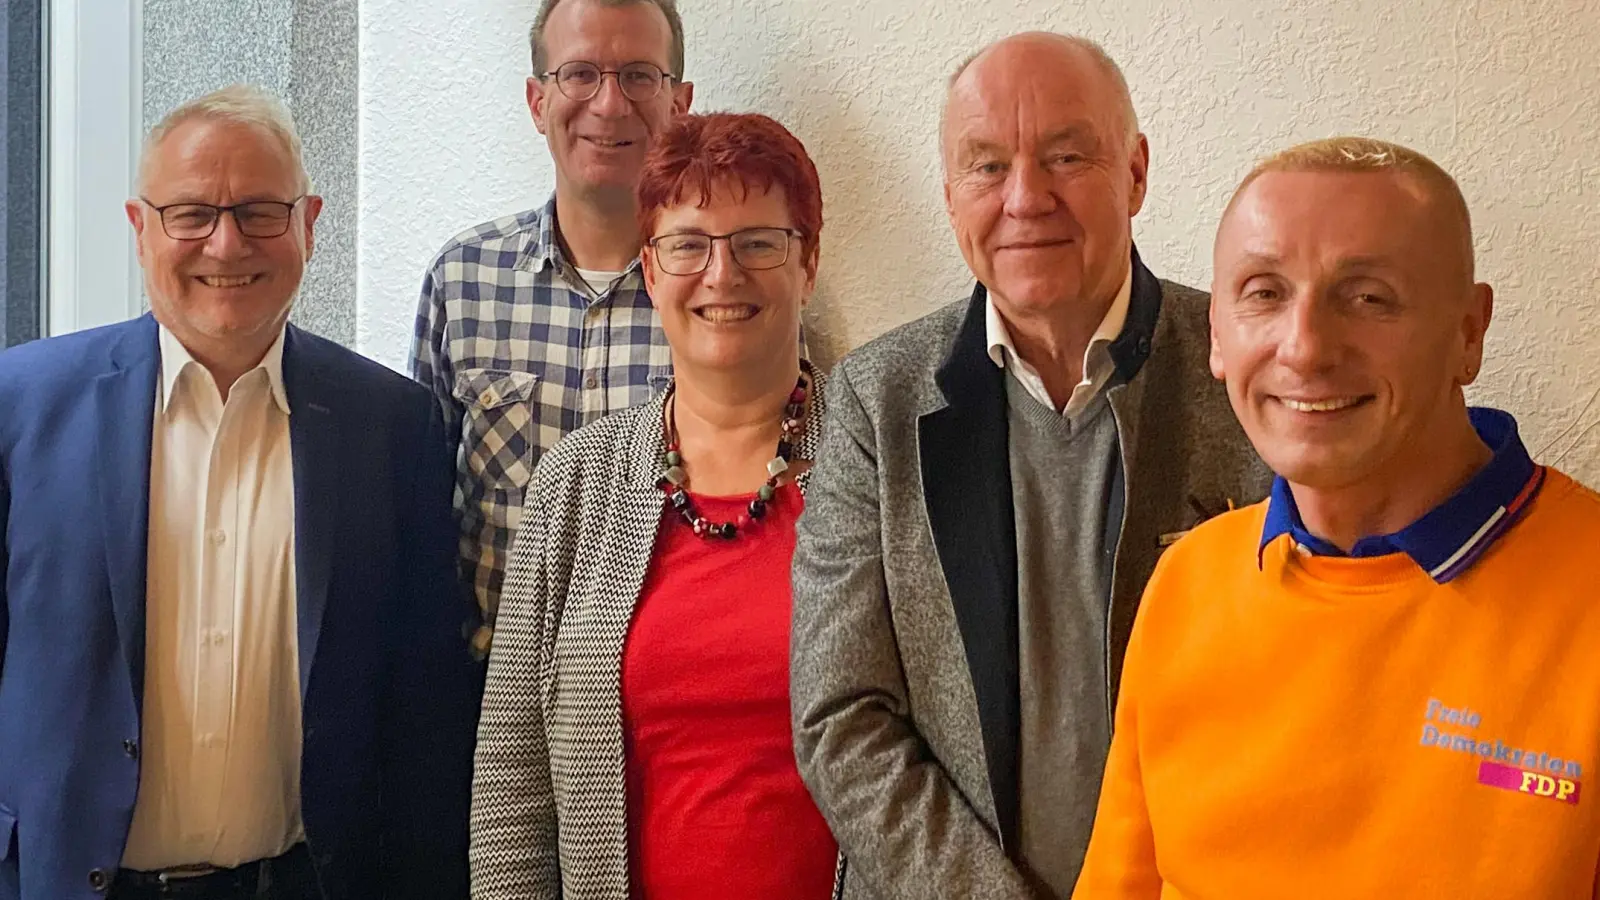 Sie schickt die FDP ins Rennen bei den anstehenden Wahlen: (von links) FDP-Kreisvorsitzender Karlheinz Faller, Thomas Quante (Listenkandidat Bezirkstag), Dr. Birgit Geier (Listenkandidatin Landtag), Lutz Stammnitz (Direktkandidat Landtag) und Oliver Sommer (Direktkandidat Bezirkstag). (Foto: Bodo Böhnke)